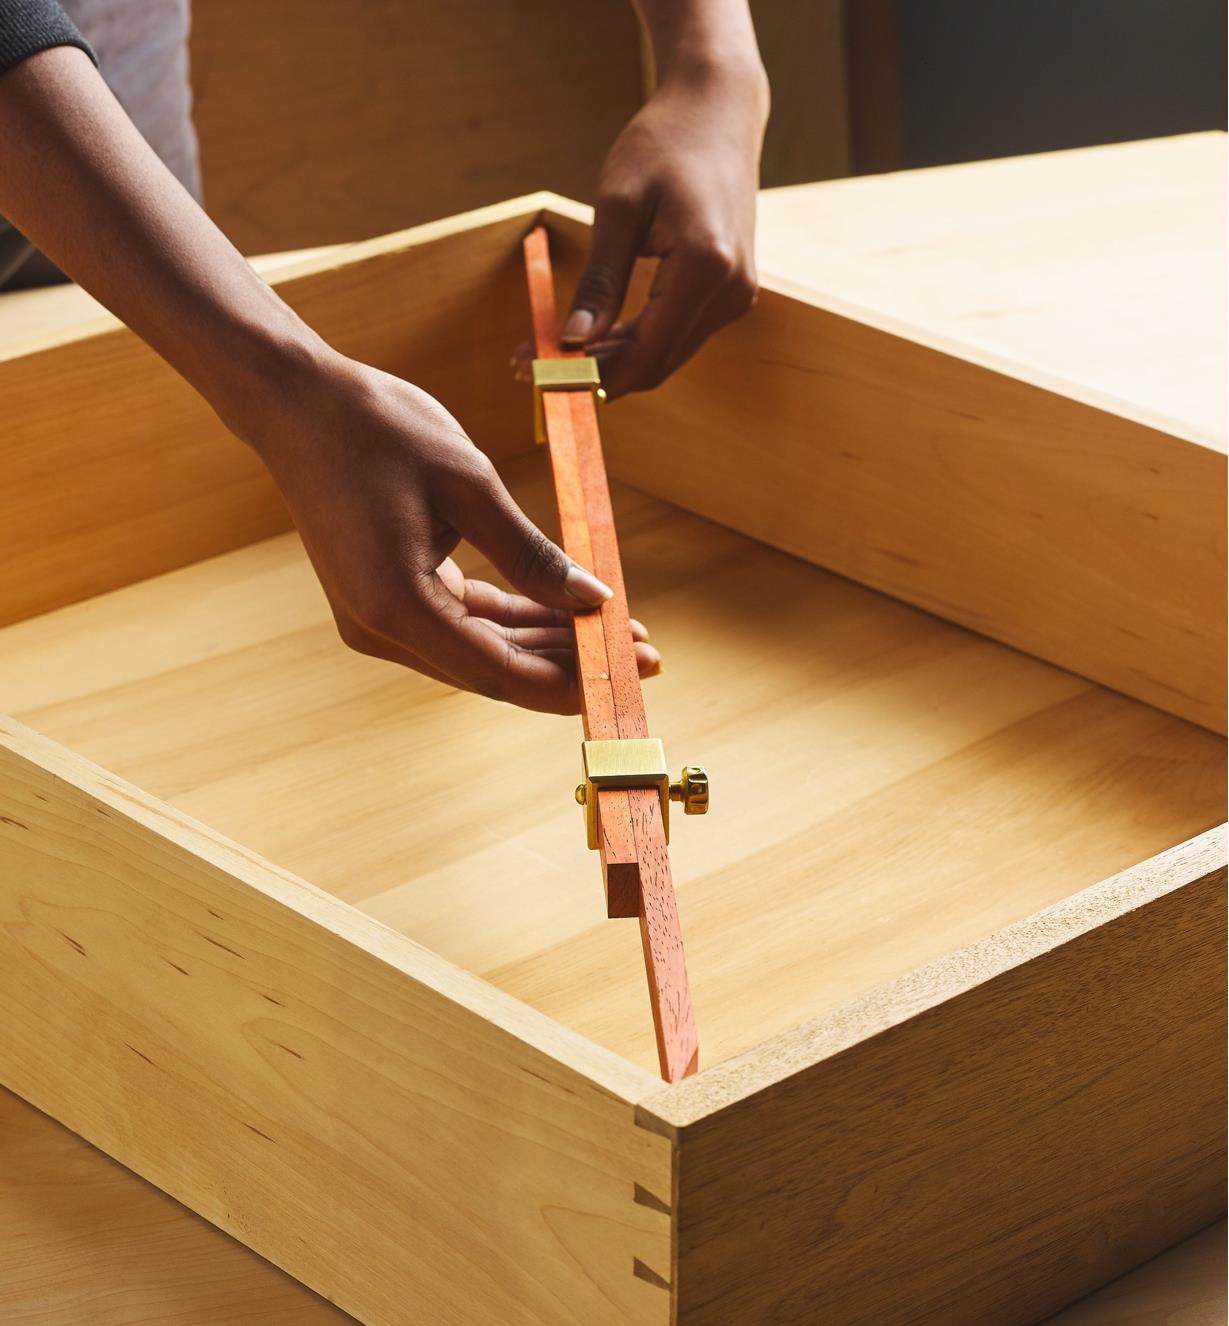 Personne utilisant une pige de mesure fabriquée avec les têtes Crucible pour relever une mesure intérieure d'un compartiment en bois